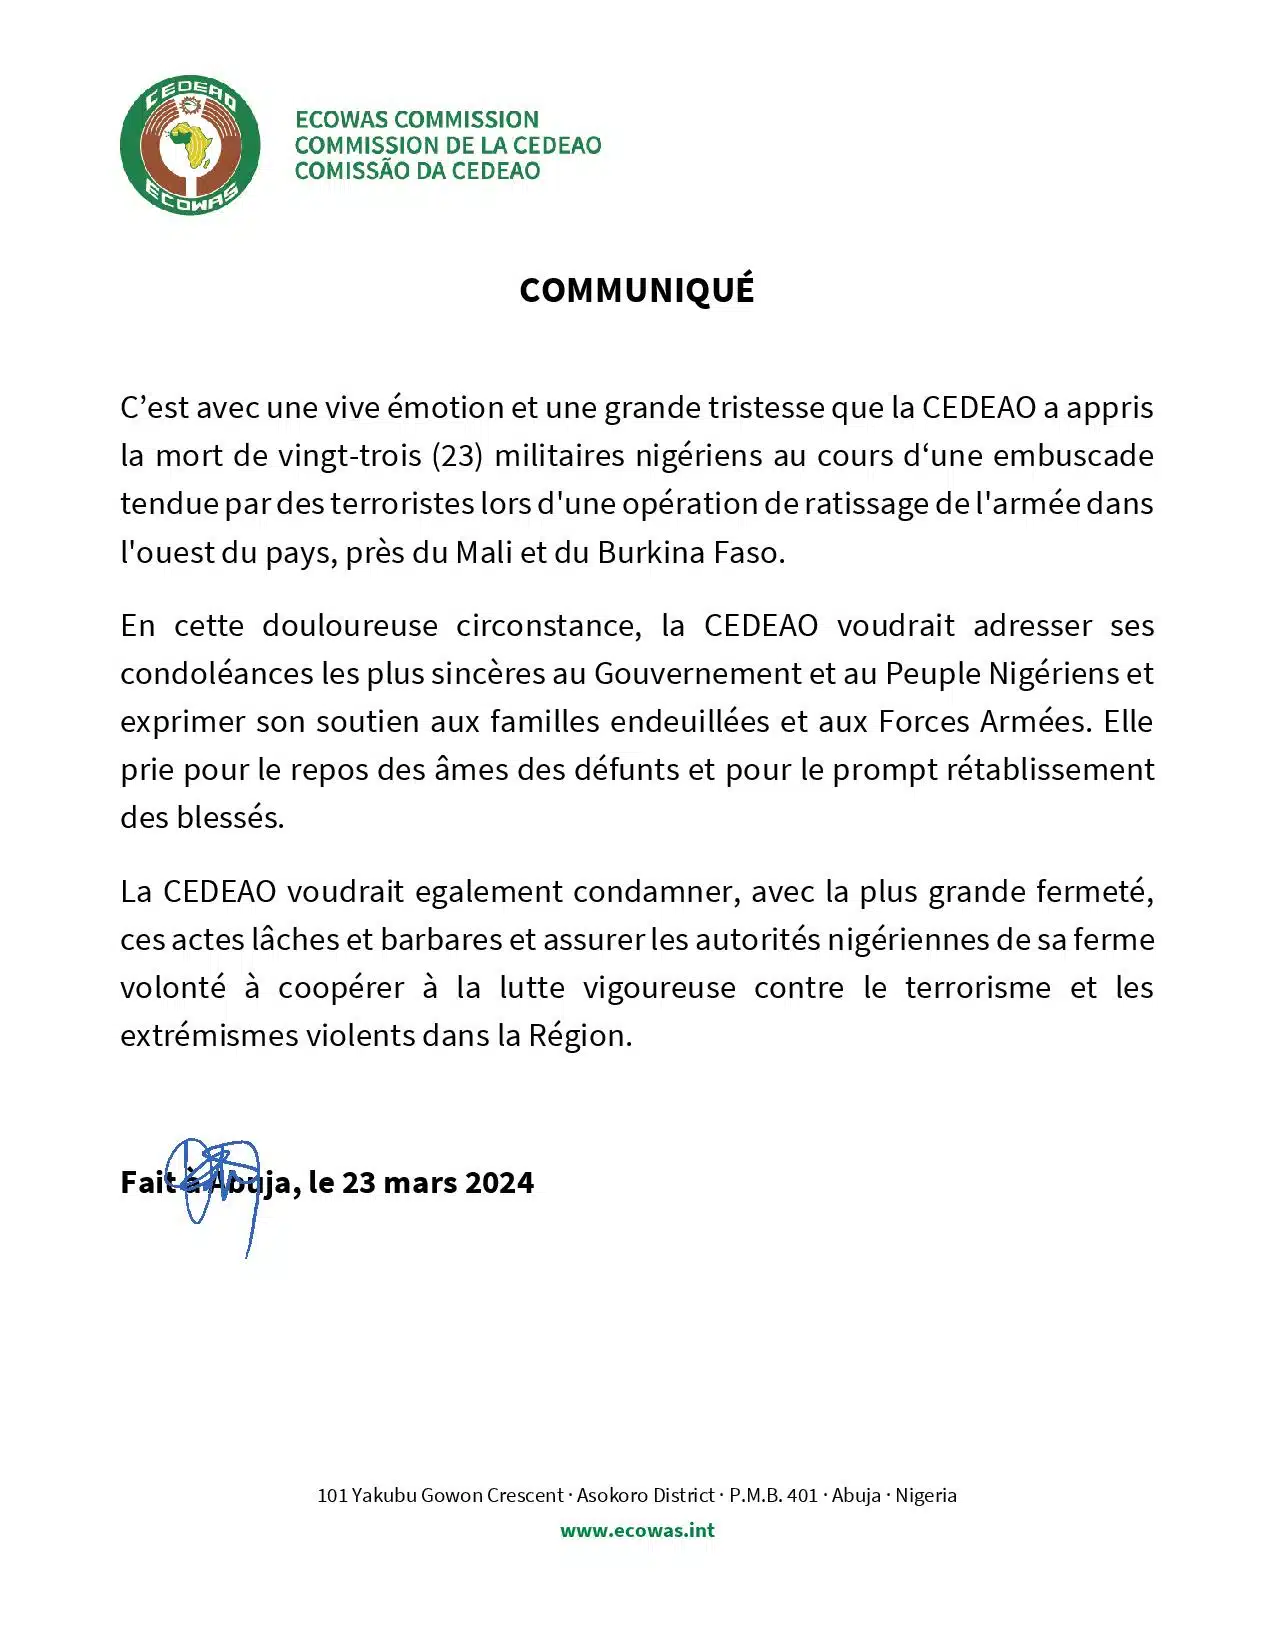 La CEDEAO exprime sa solidarité au Niger et sa volonté d’une coopération dans la lutte contre le terrorisme